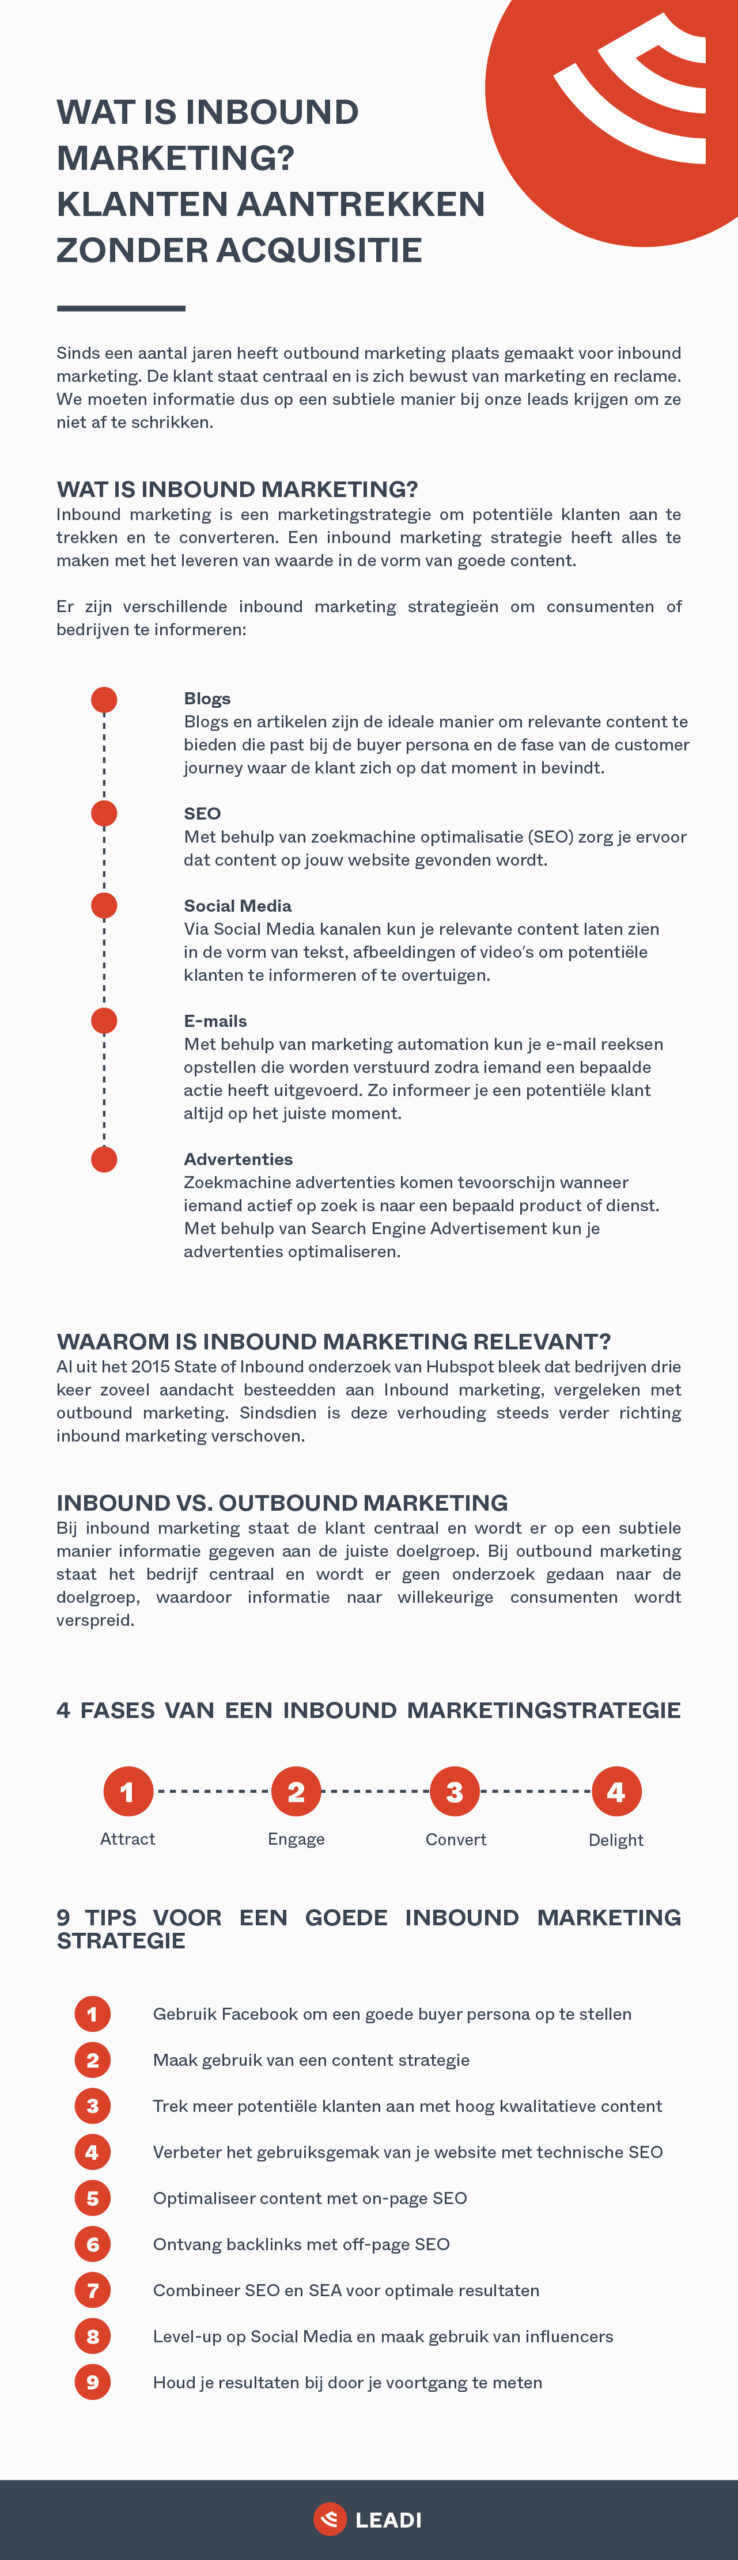 Inbound marketing infographic